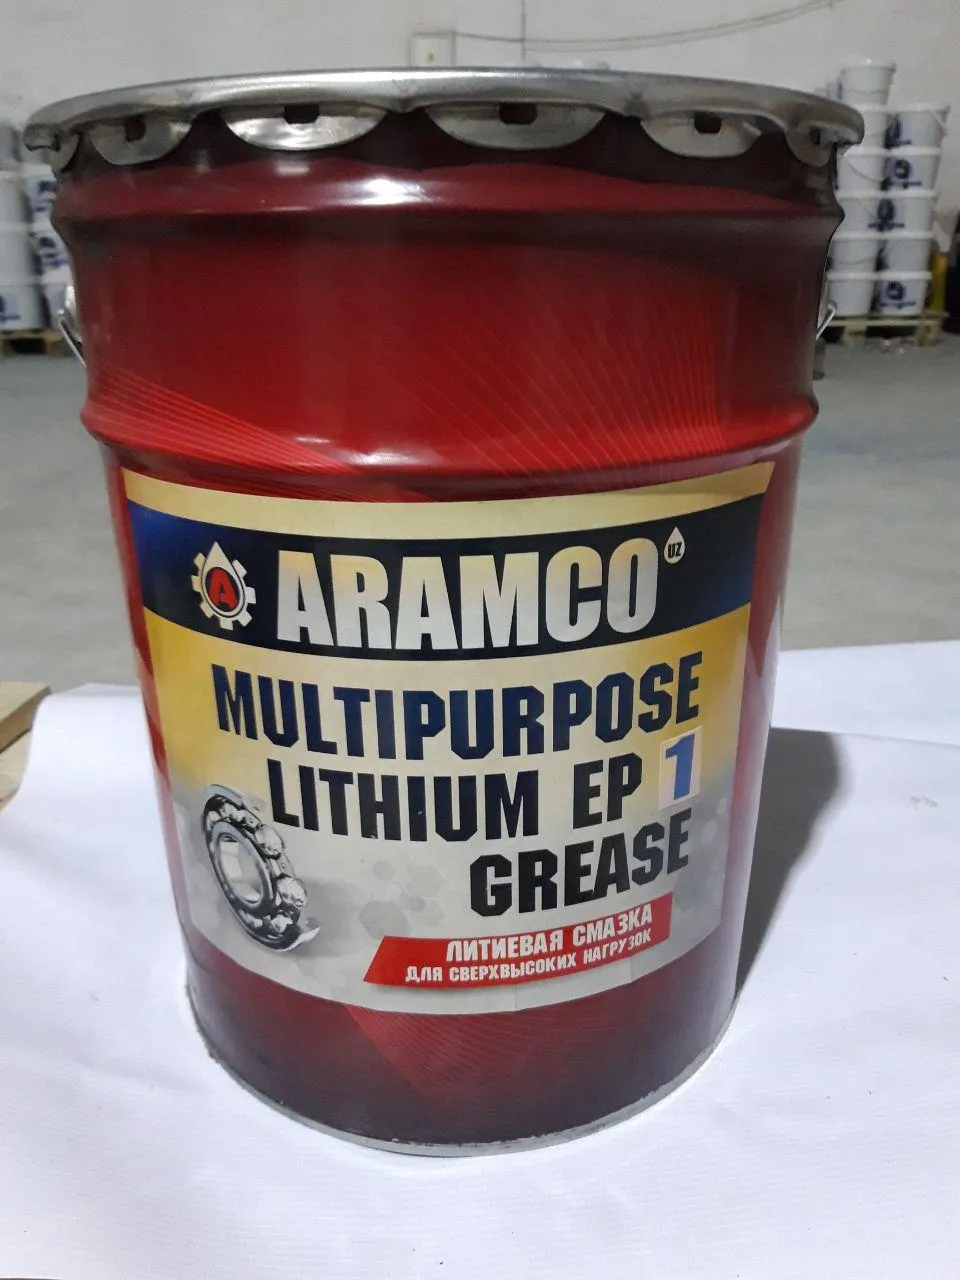 Aramco Multipurpose Lithium Grease EP 1#1